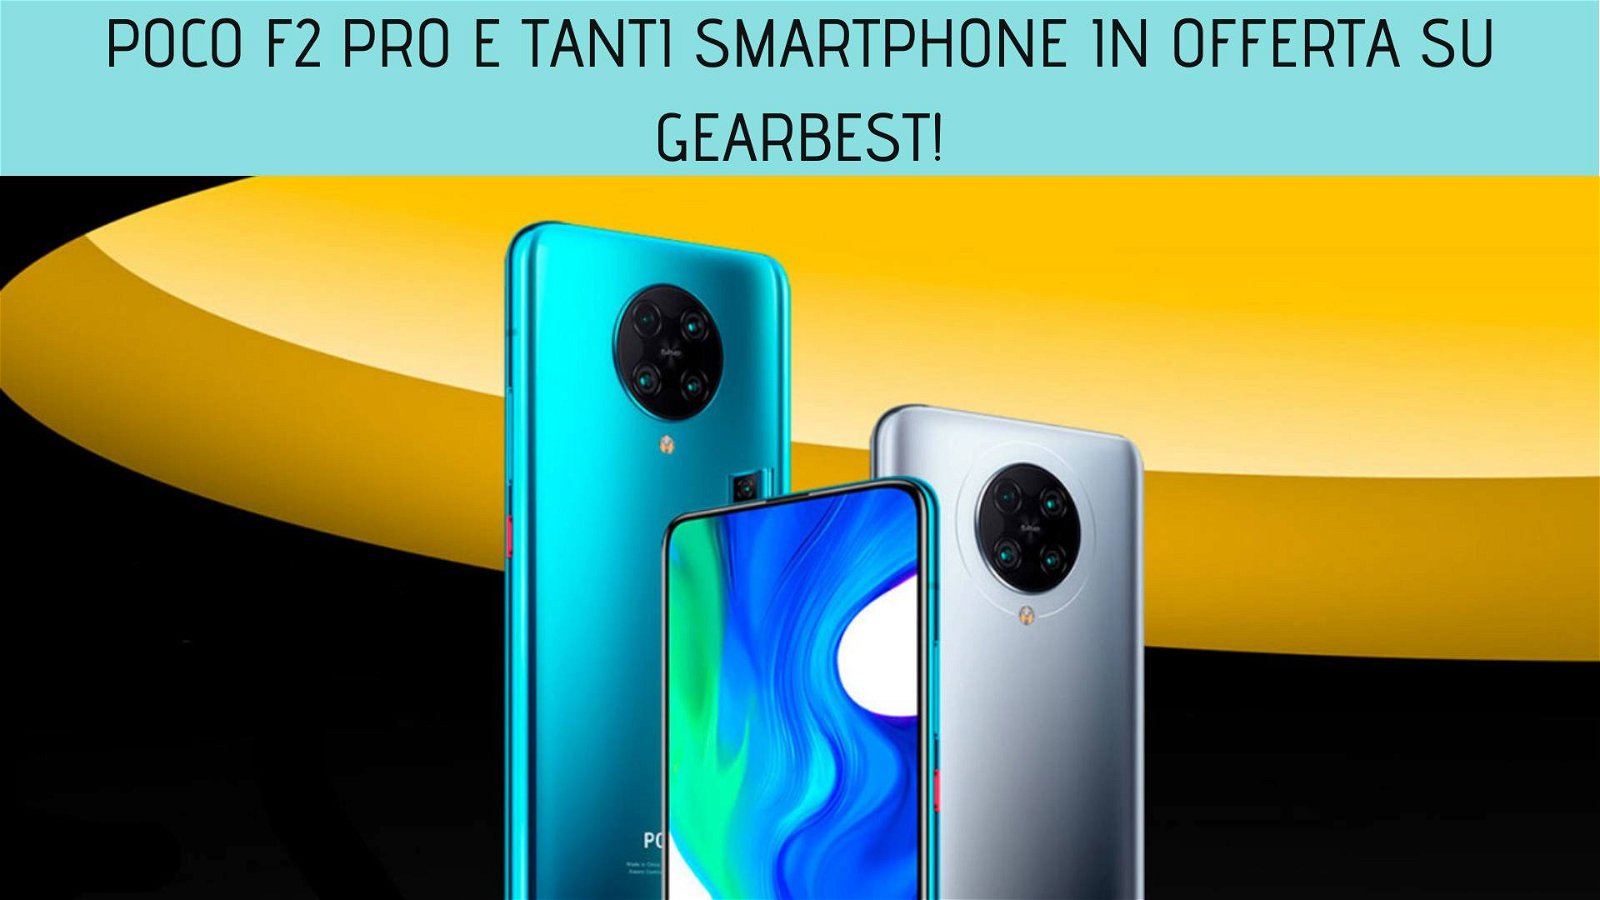 Immagine di Poco F2 Pro e tanti smartphone in offerta su Gearbest!